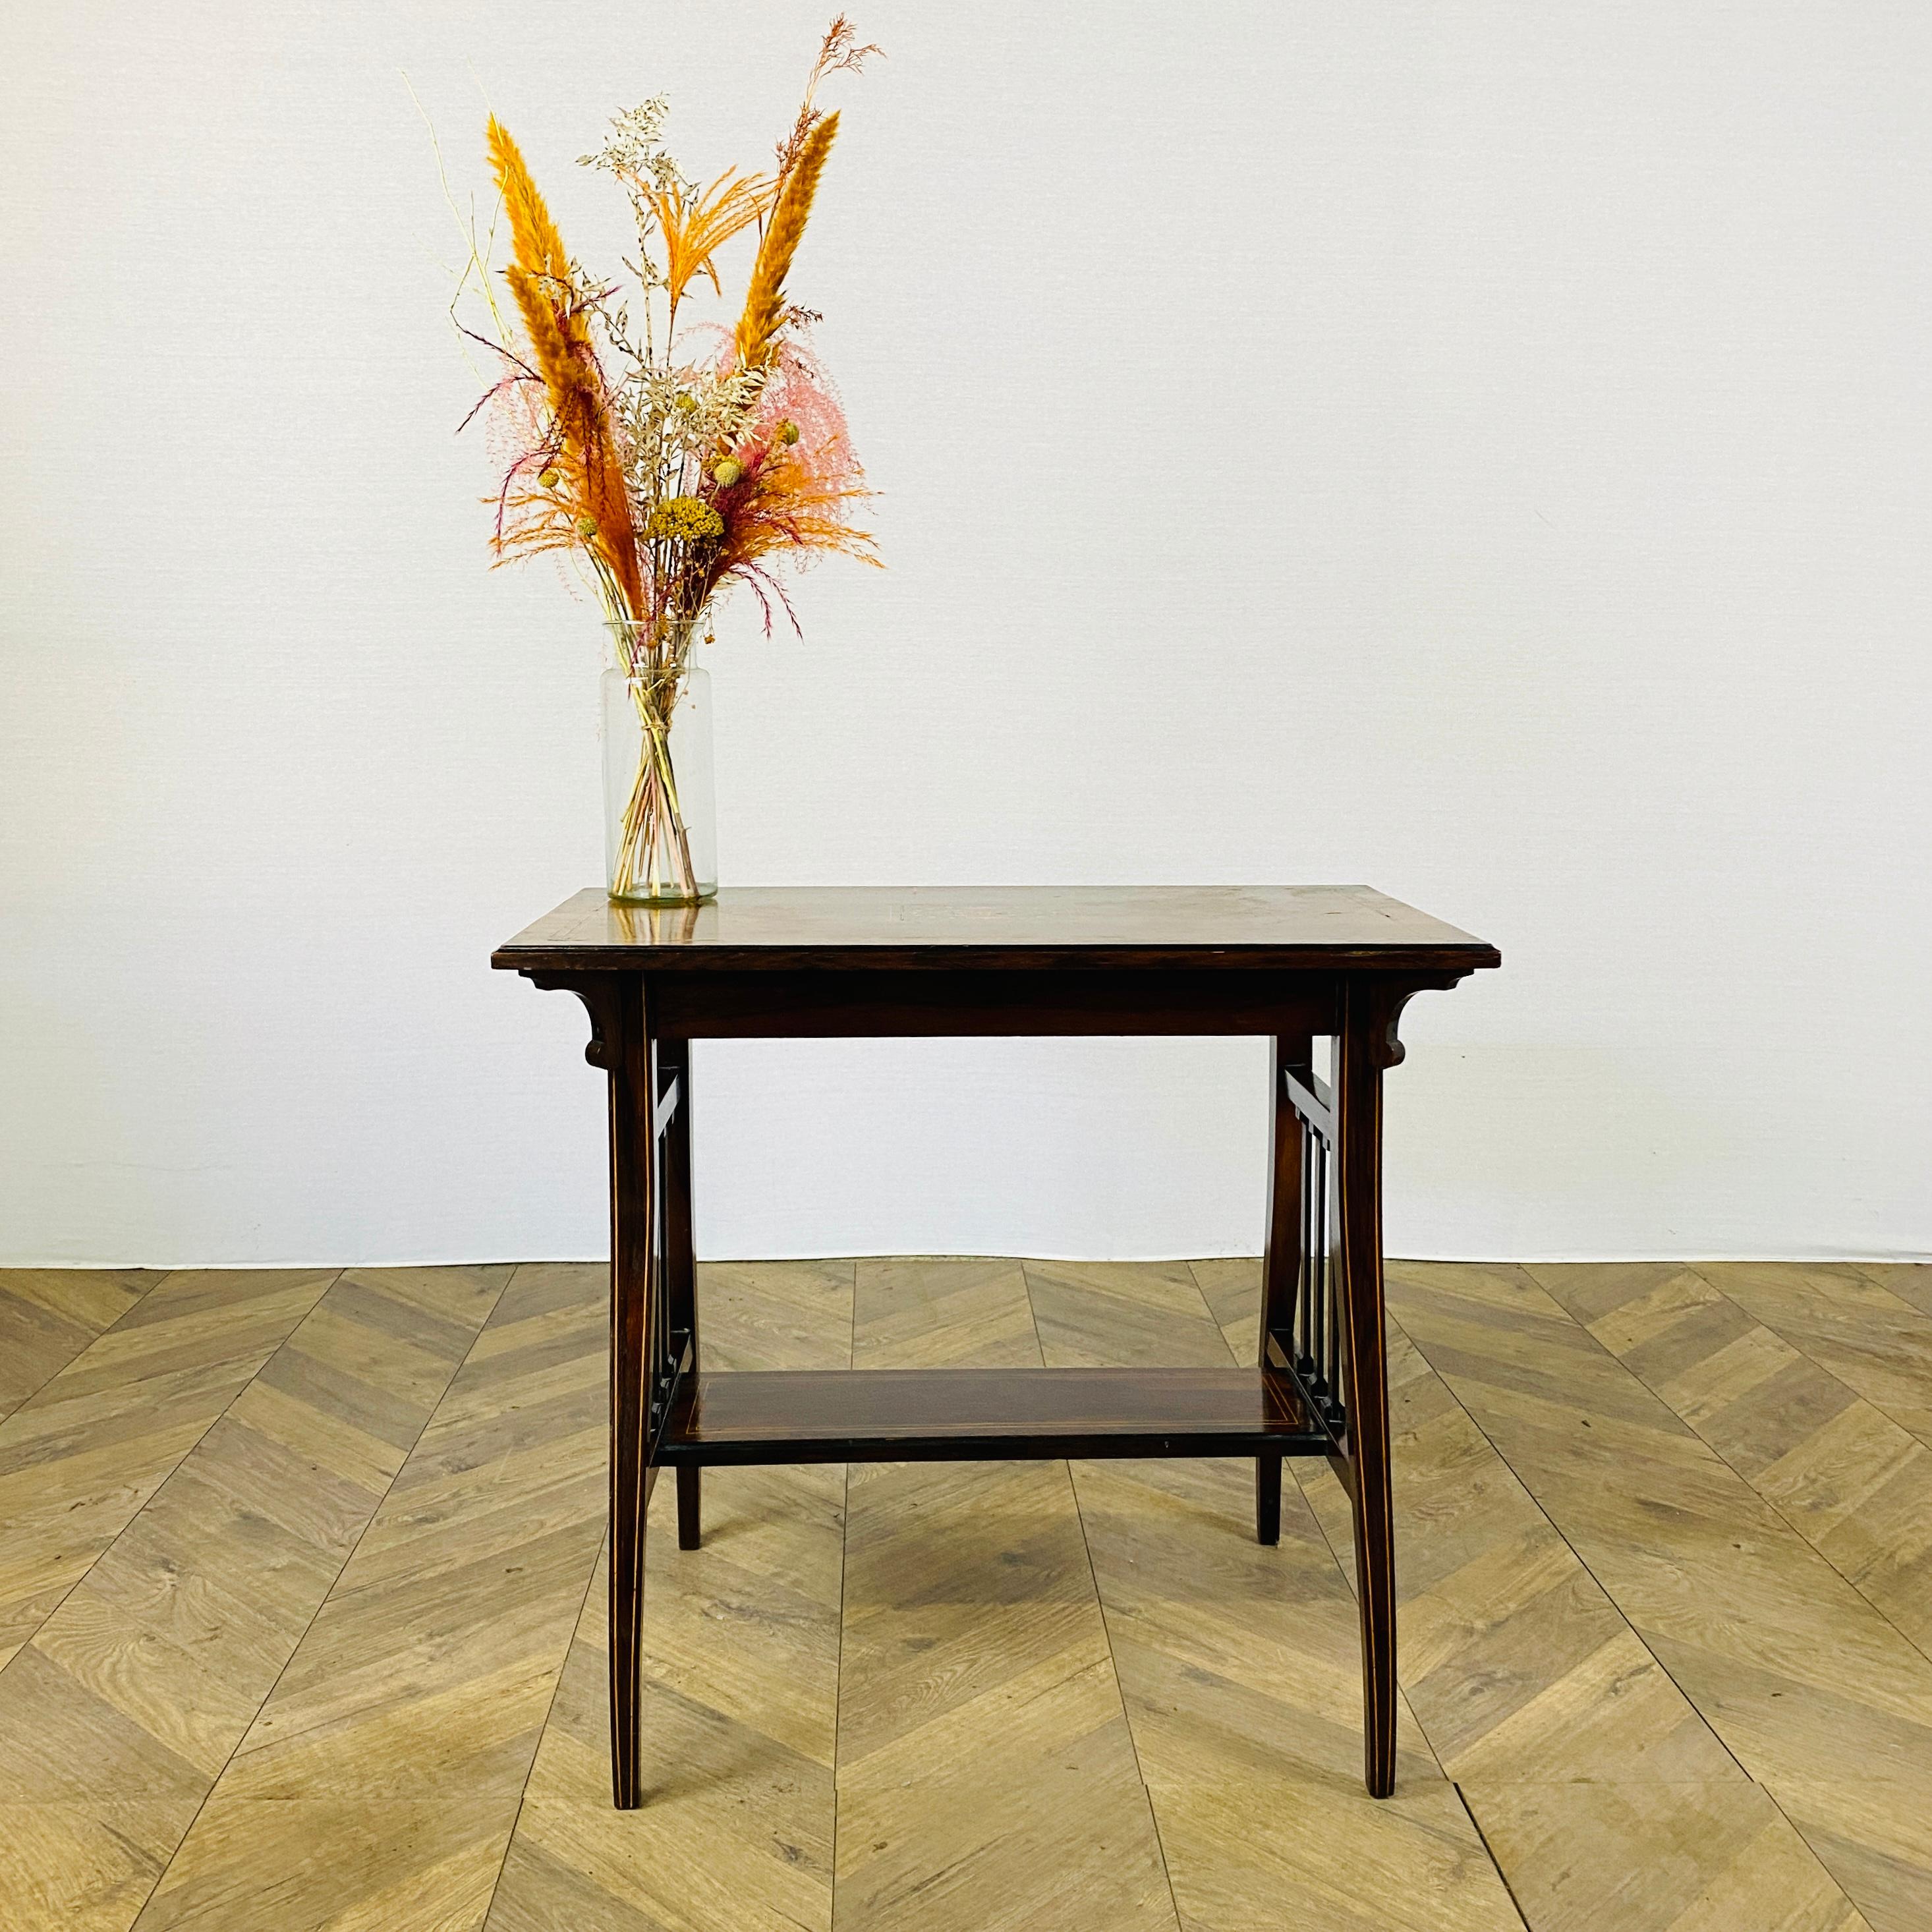 Table d'appoint à deux niveaux en bois de rose marqueté, très décorative, datant de l'époque victorienne, vers 1880

La table présente une double bande de buis et un motif central de coquille circulaire incrustée, avec des détails incrustés sur